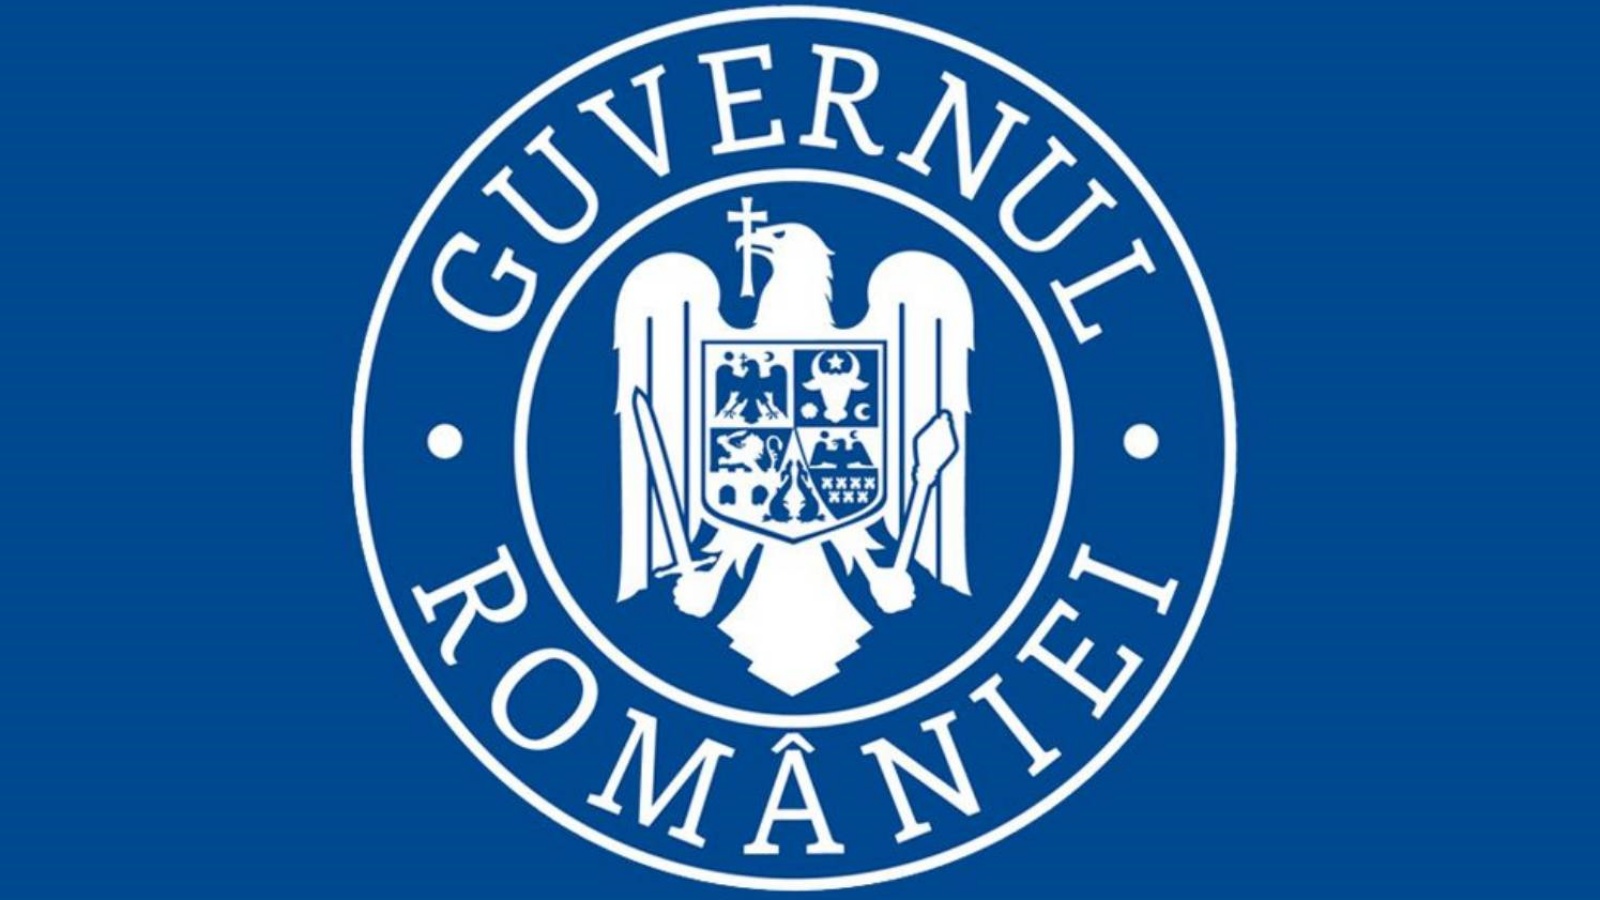 Alarmierende Botschaft der rumänischen Regierung an rumänische Ärzte